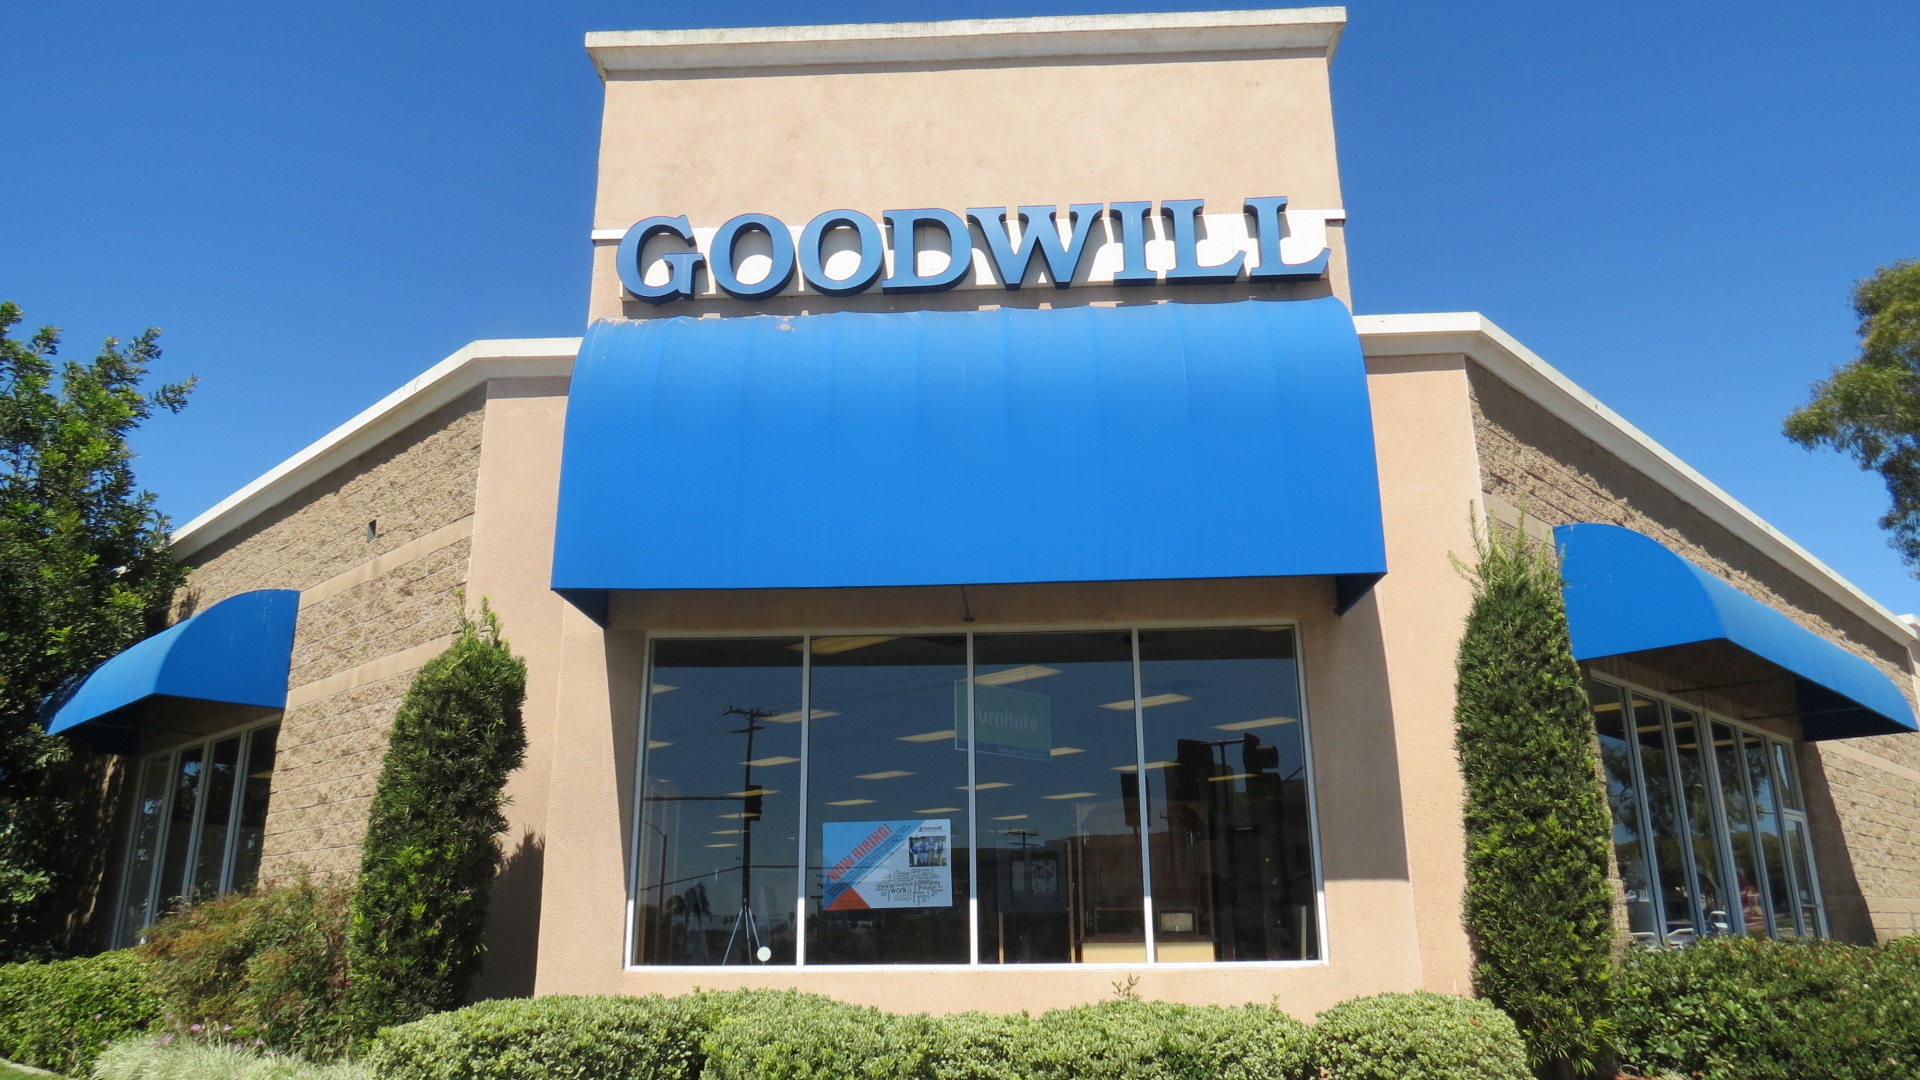 Long Beach Goodwill Retail Store & Donation Center